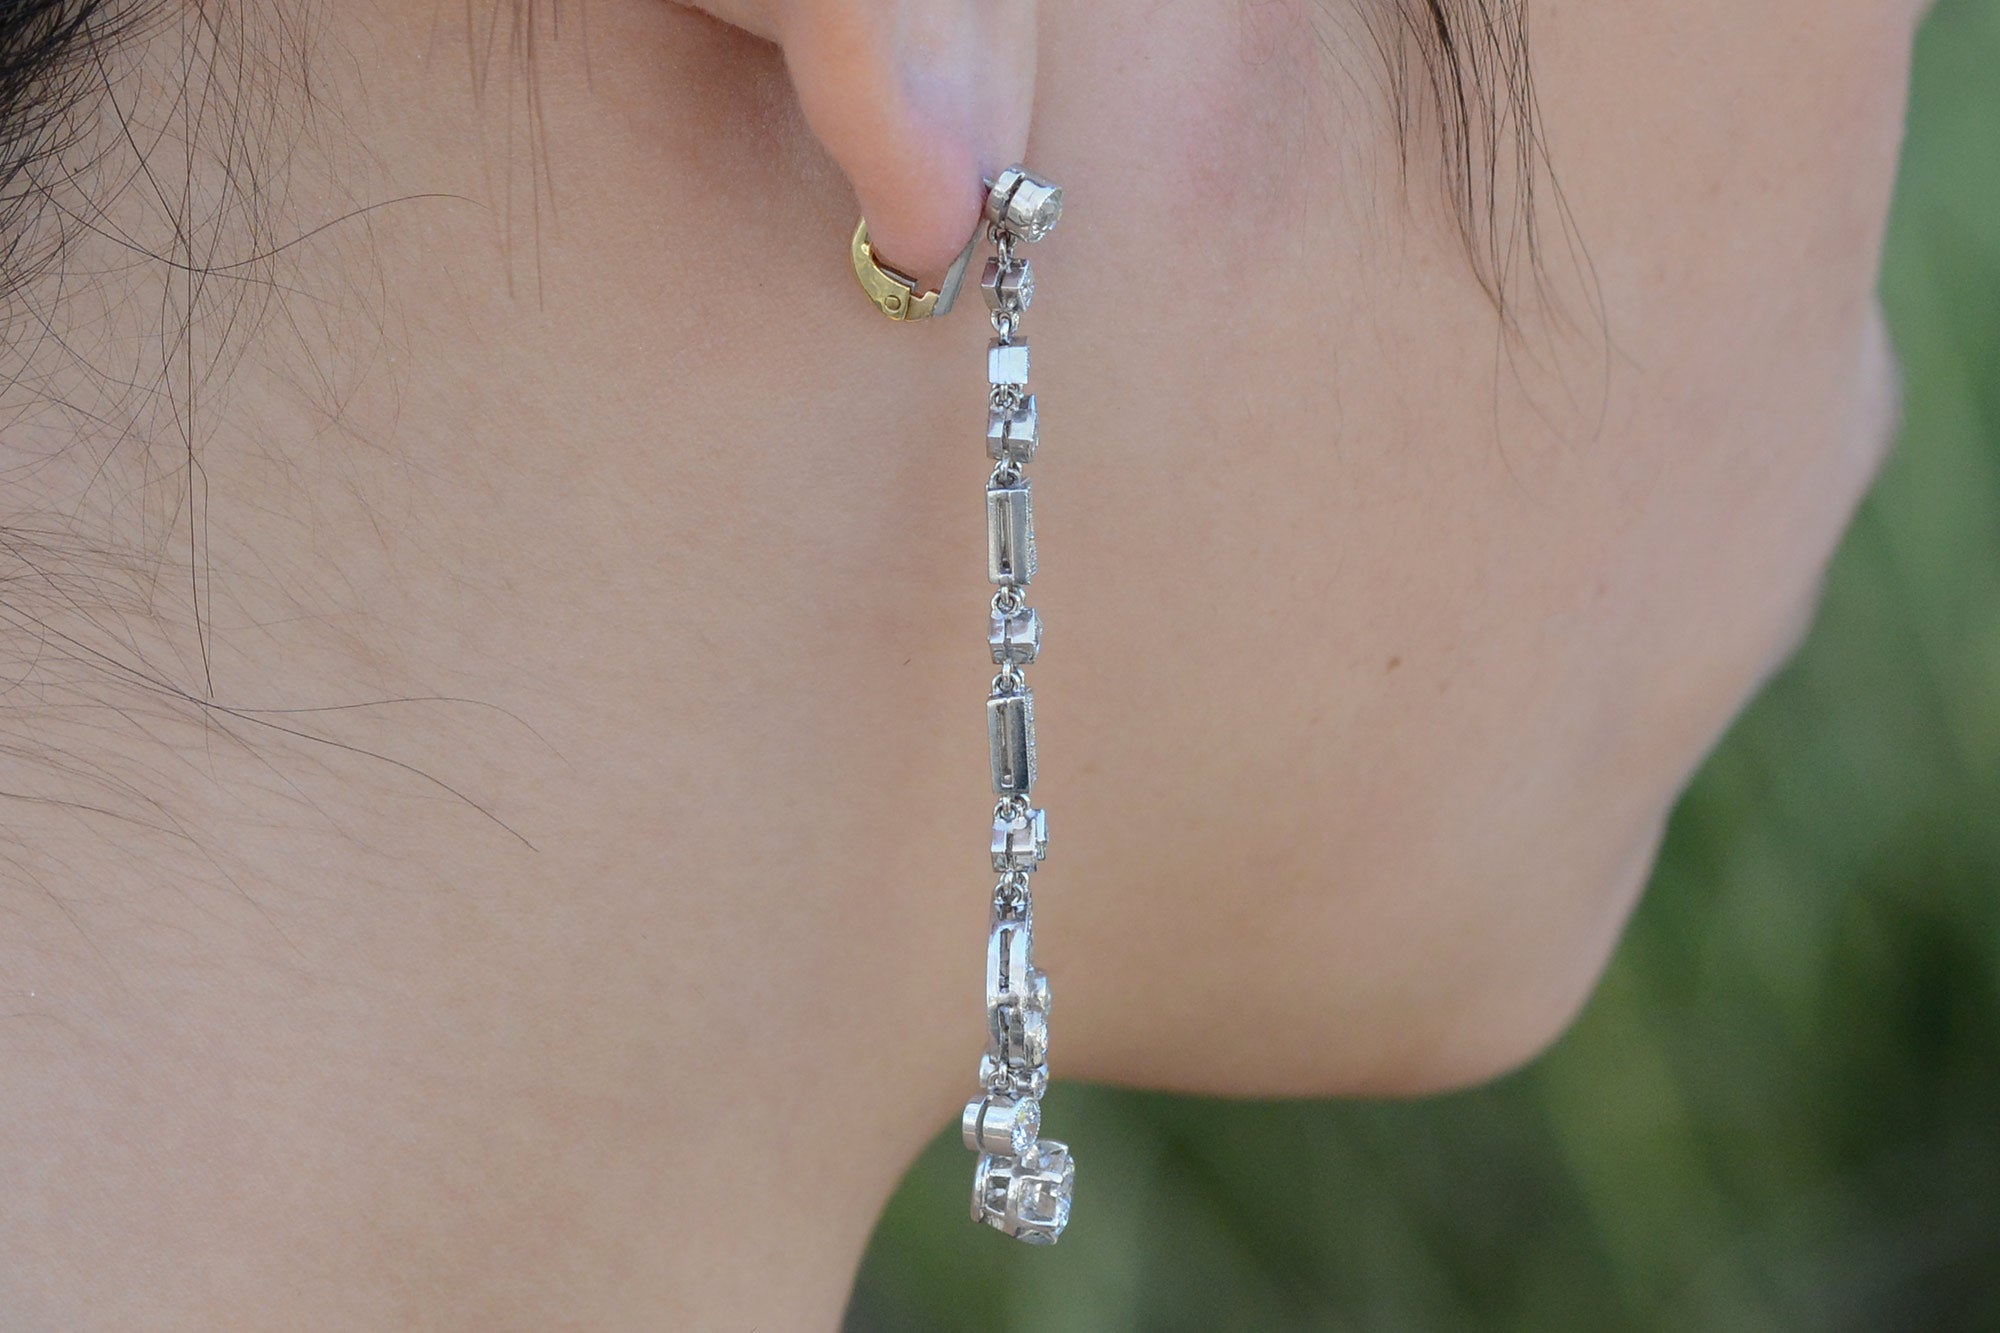 Art Deco Revival 3 Carat Diamond Drop Chandelier Earrings